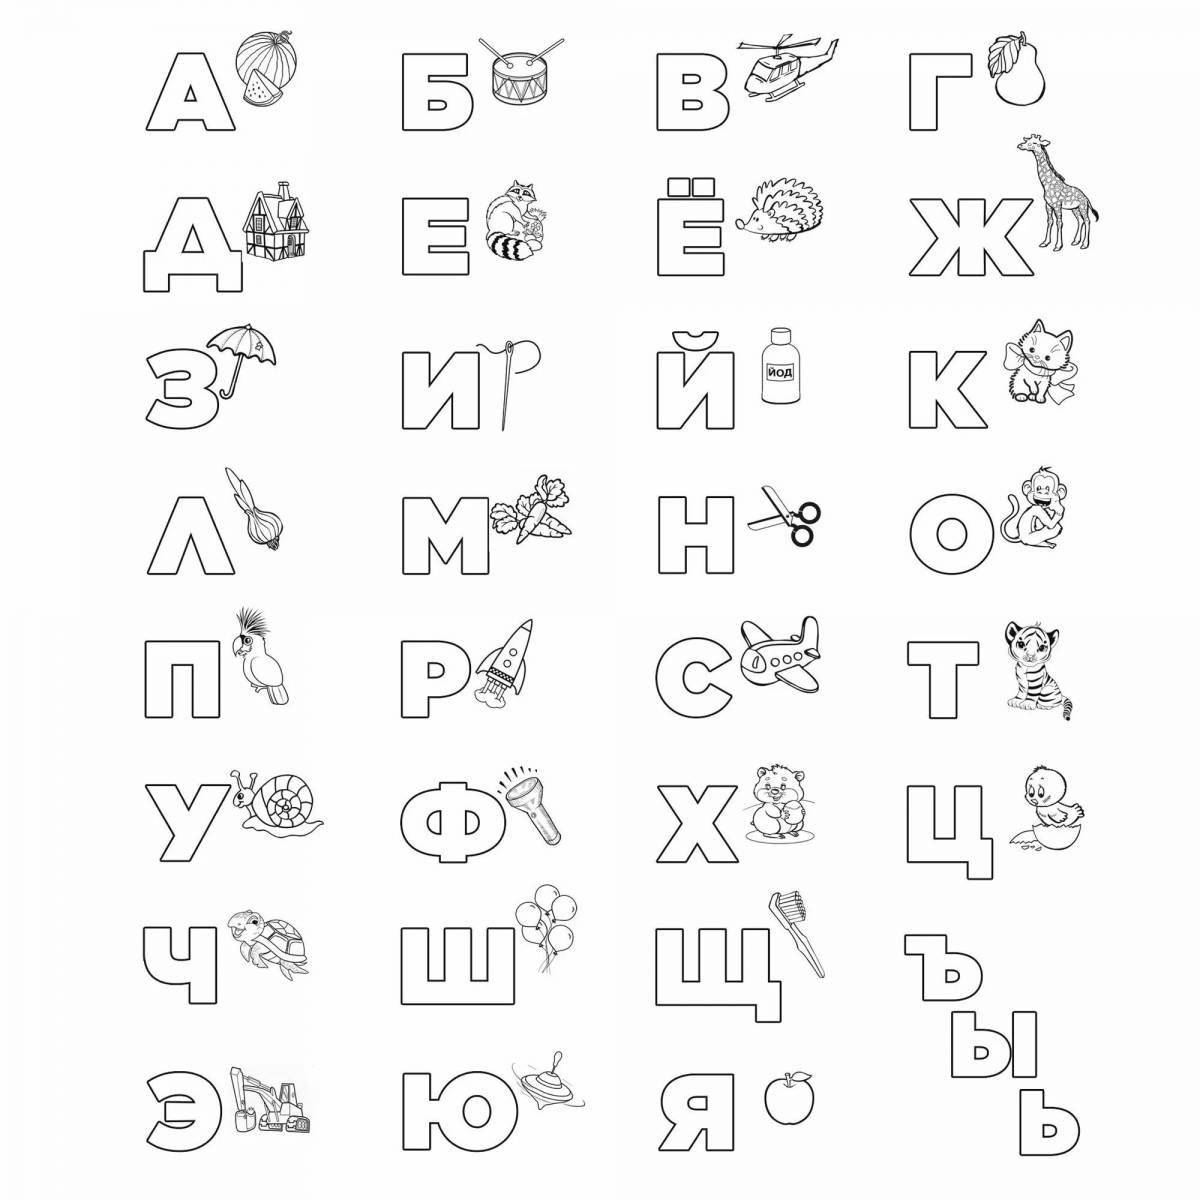 Изображения по запросу Казахский алфавит - страница 4